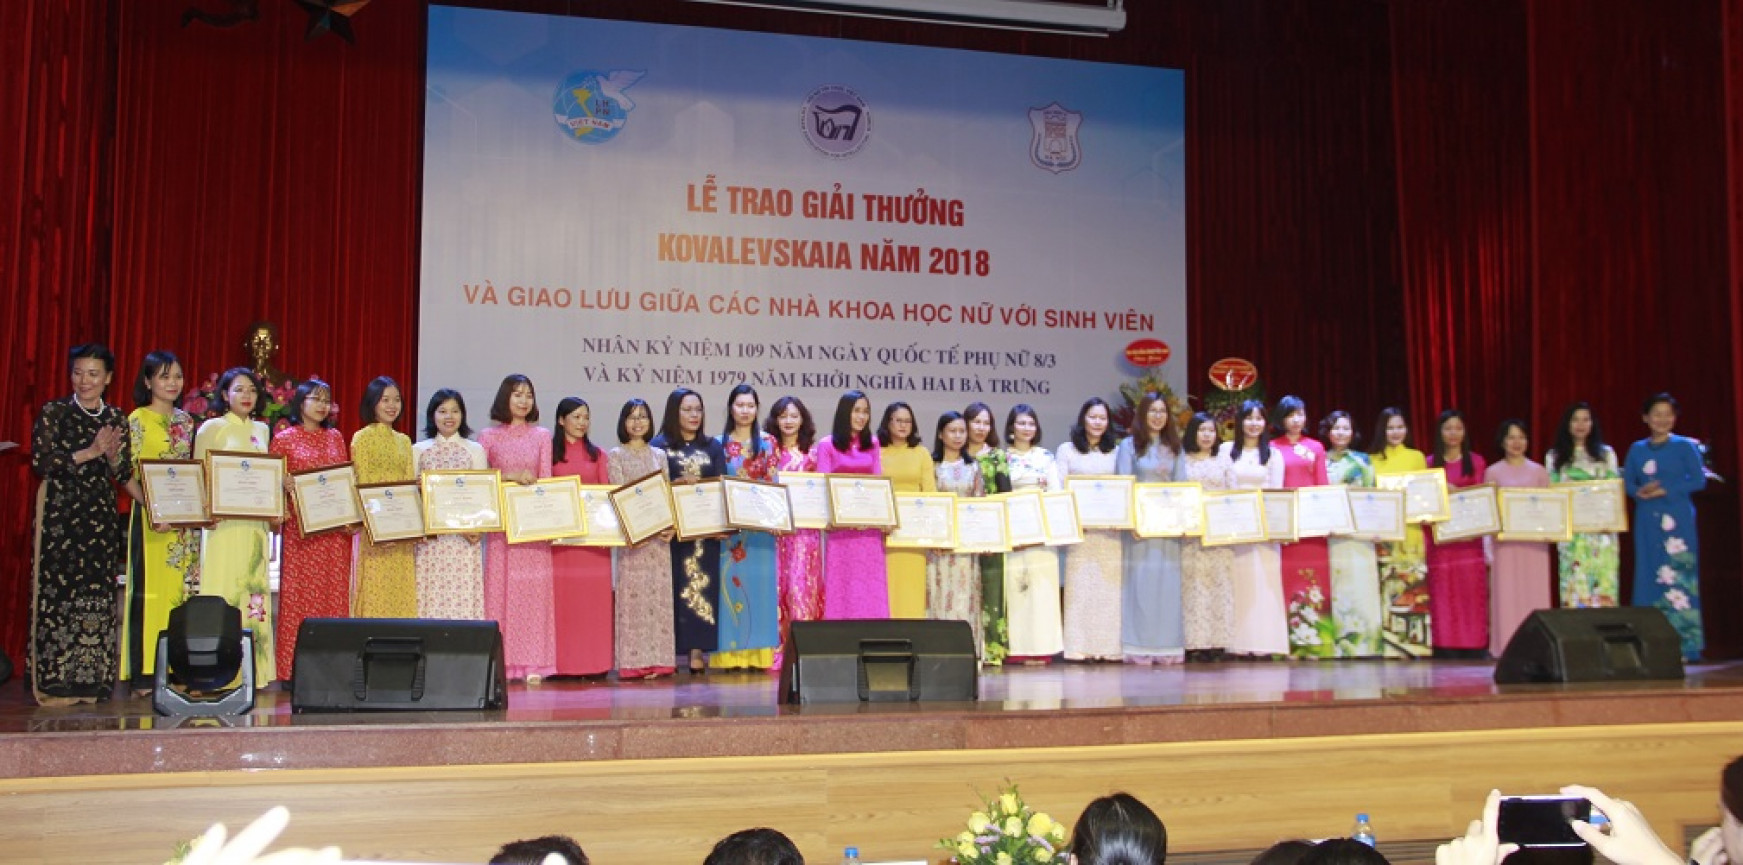 Các Phó Chủ tịch Hội LHPNVN: Nguyễn Thị Tuyết (bìa trái) và Trần Thị Hương (bìa phải) trao tặng Bằng khen cho hội viên Hội Nữ trí thức Việt Nam được phong học vị Tiến sỹ trong nước năm 2017 và 2018